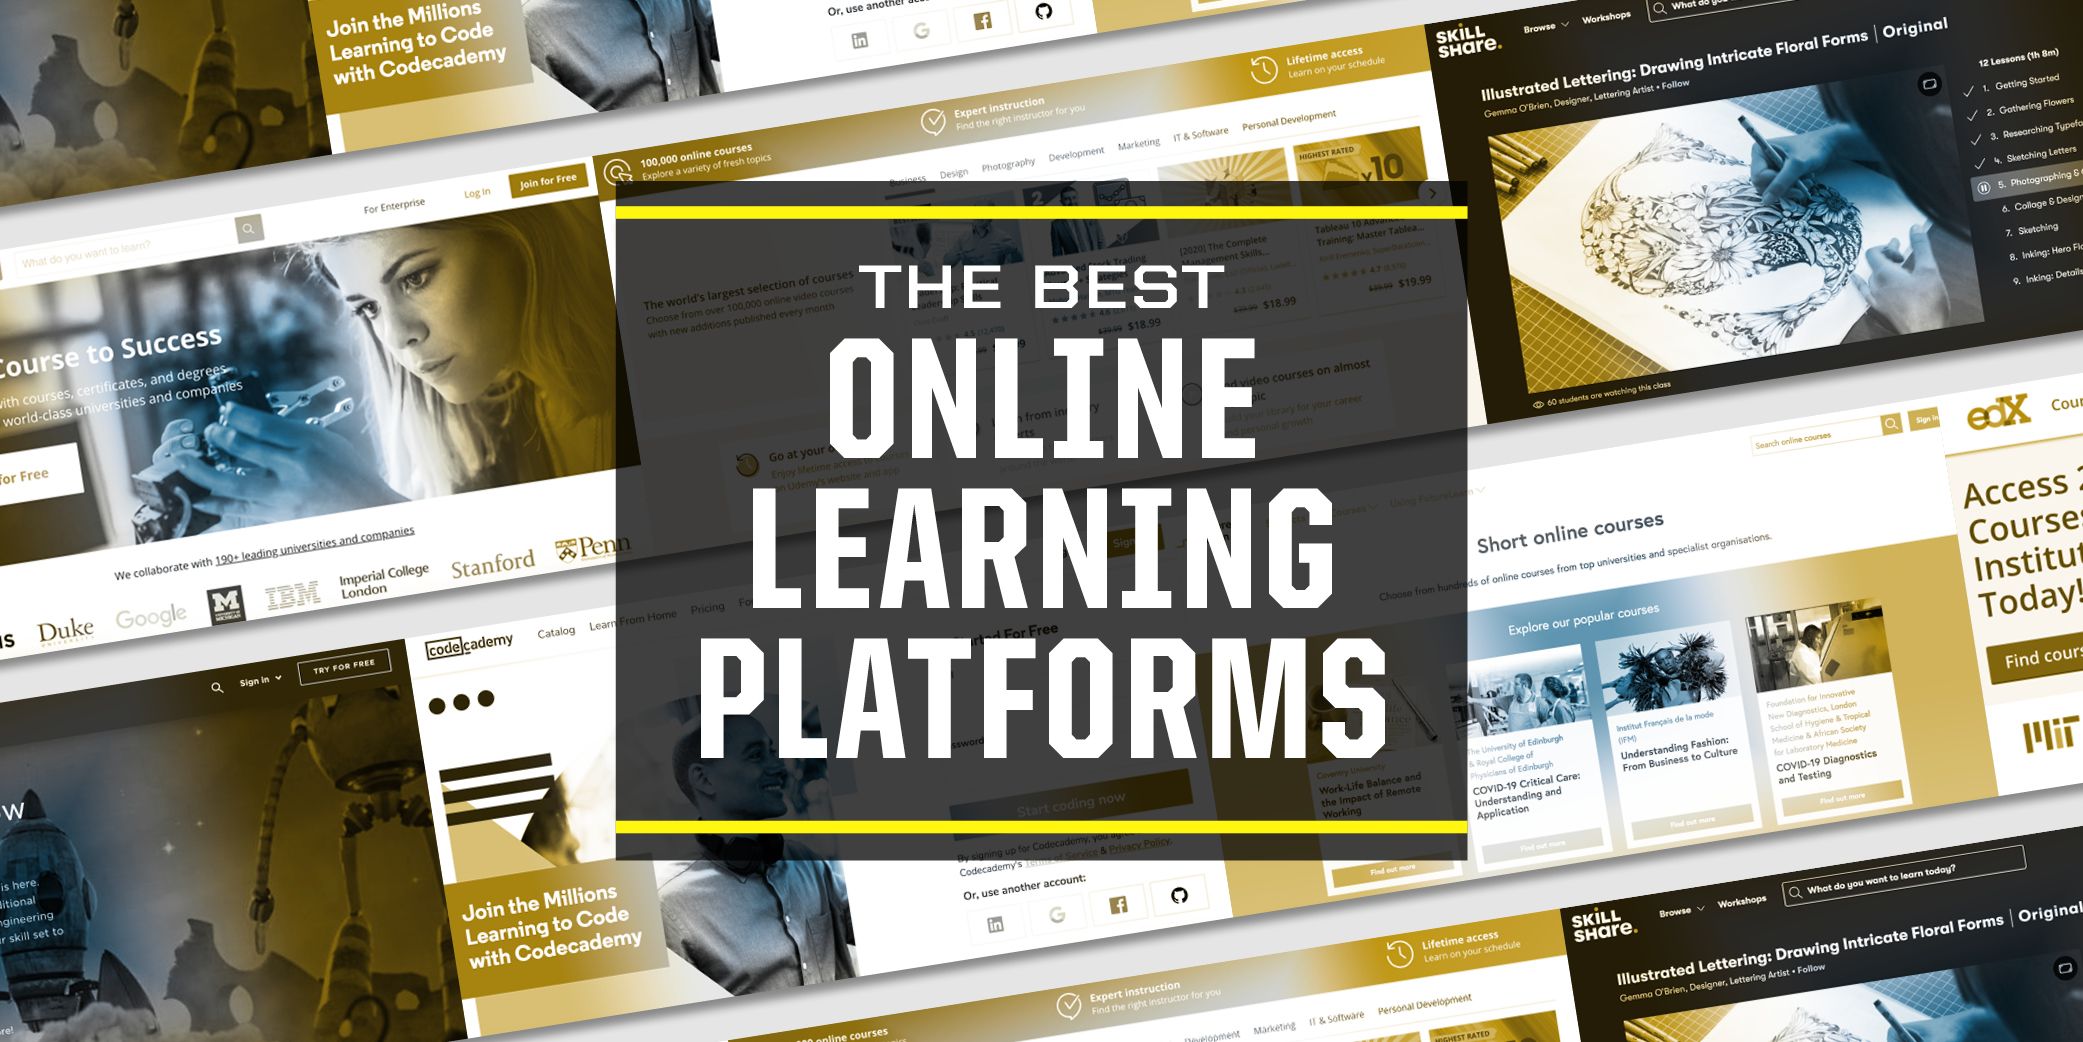 Solrig Torden Bedre 7 Great Online Learning Platforms to Develop New Skills